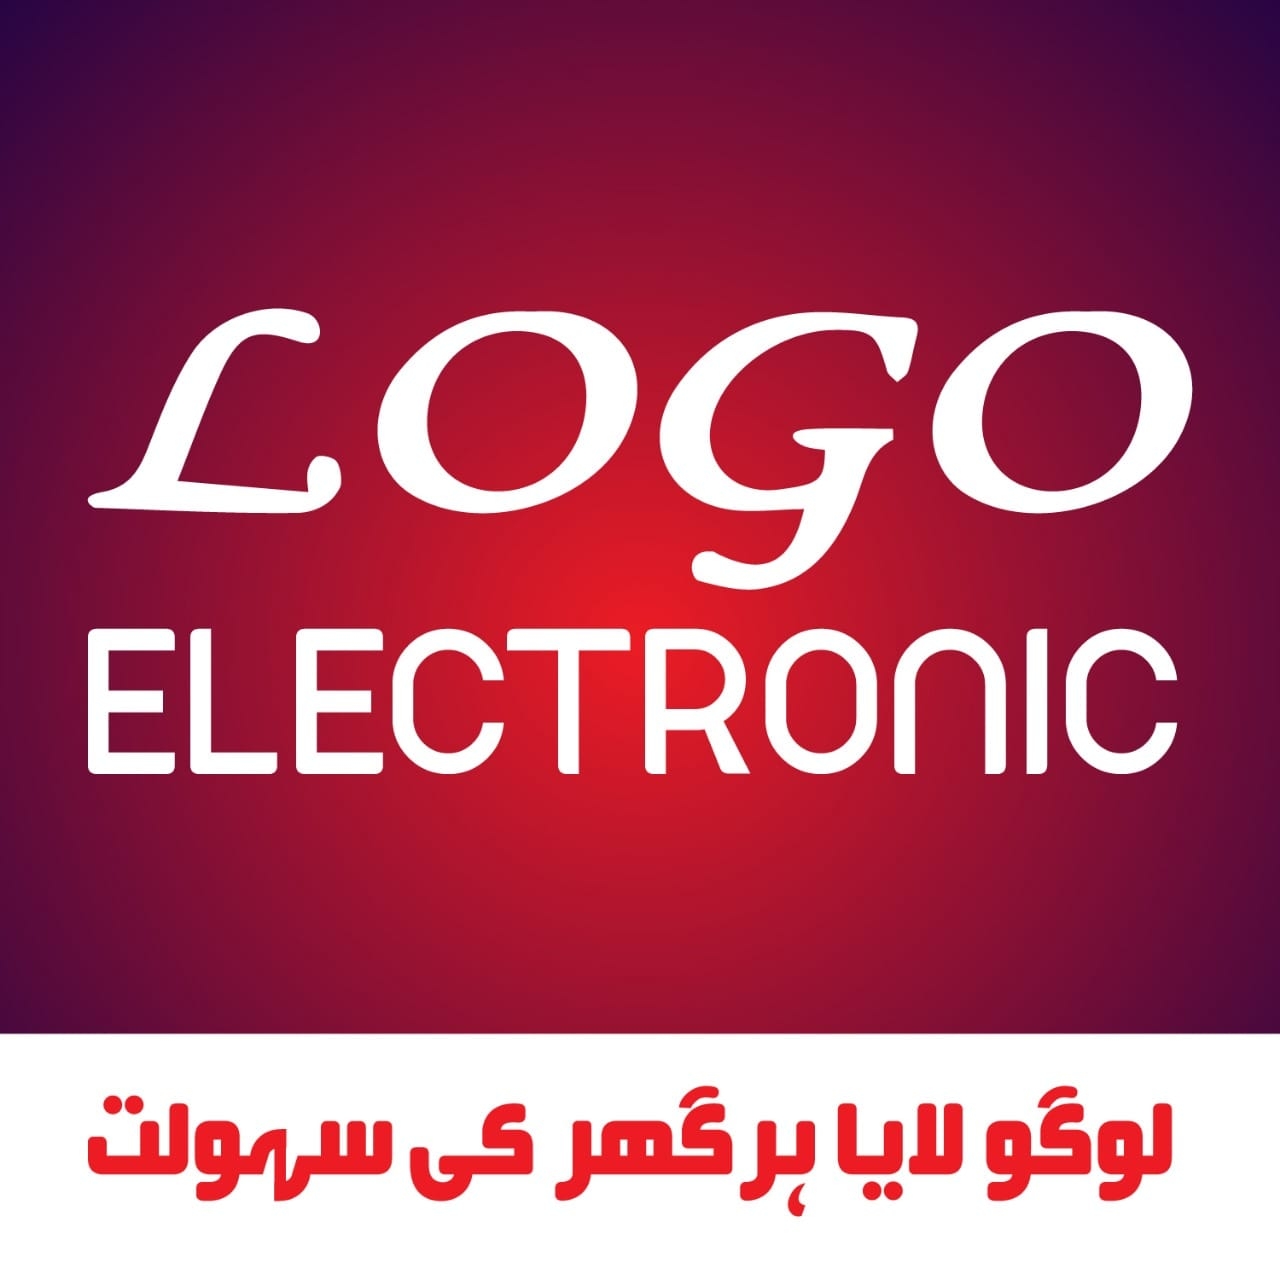 Logo Electronic